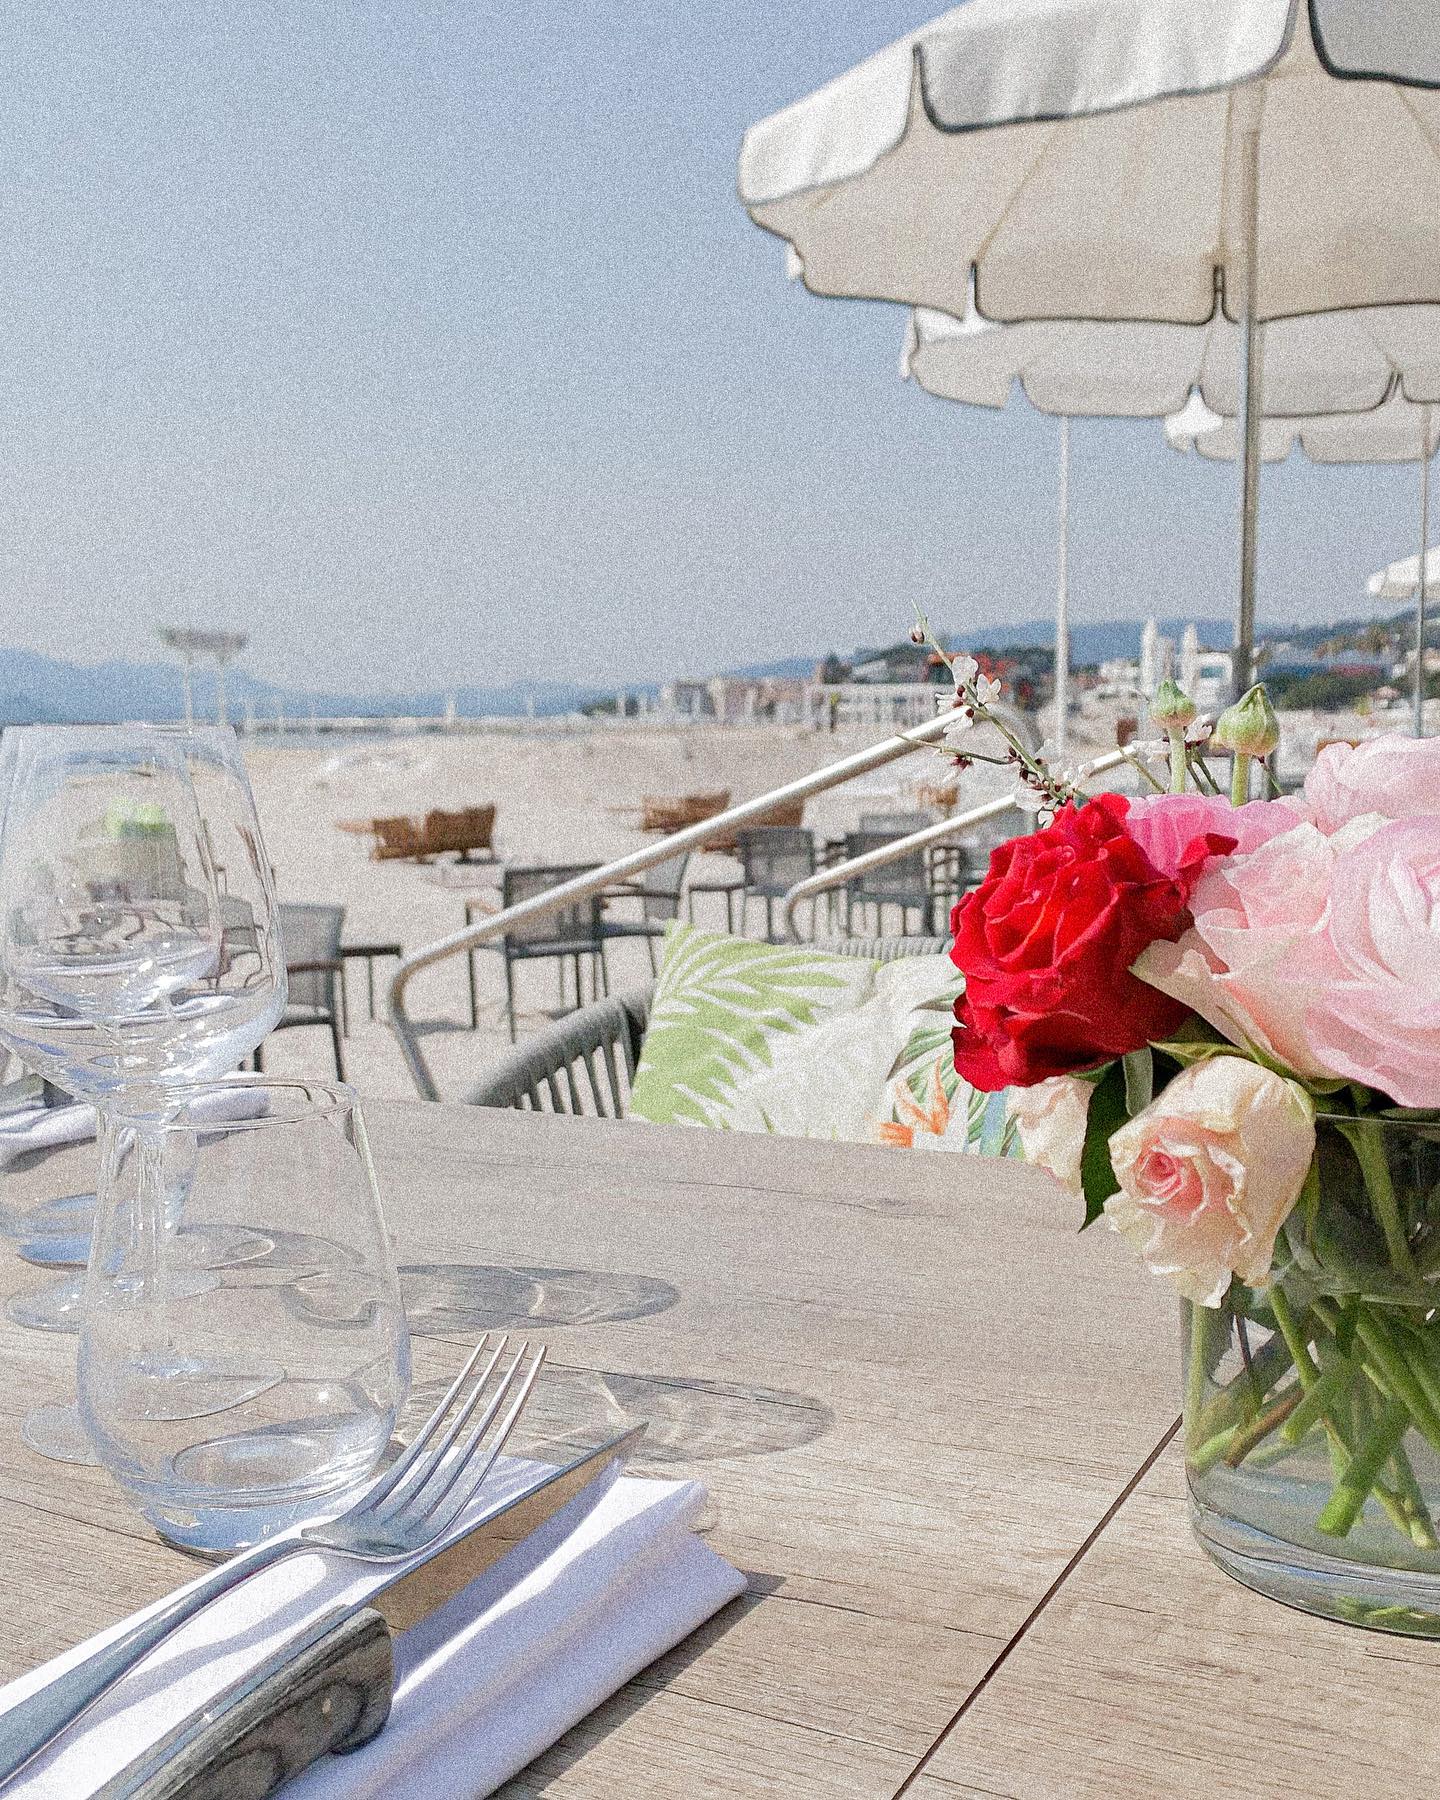 #WeekendVibes 💙 Rendez-vous au #VegalunaPlage pour un début de week-end sous le soleil cannois ☀️
-
Boulevard de la Croisette, Cannes
04.93.43.67.05
www.vegaluna.f  #drinks #cannes #beach #plage #restaurant #summervibes